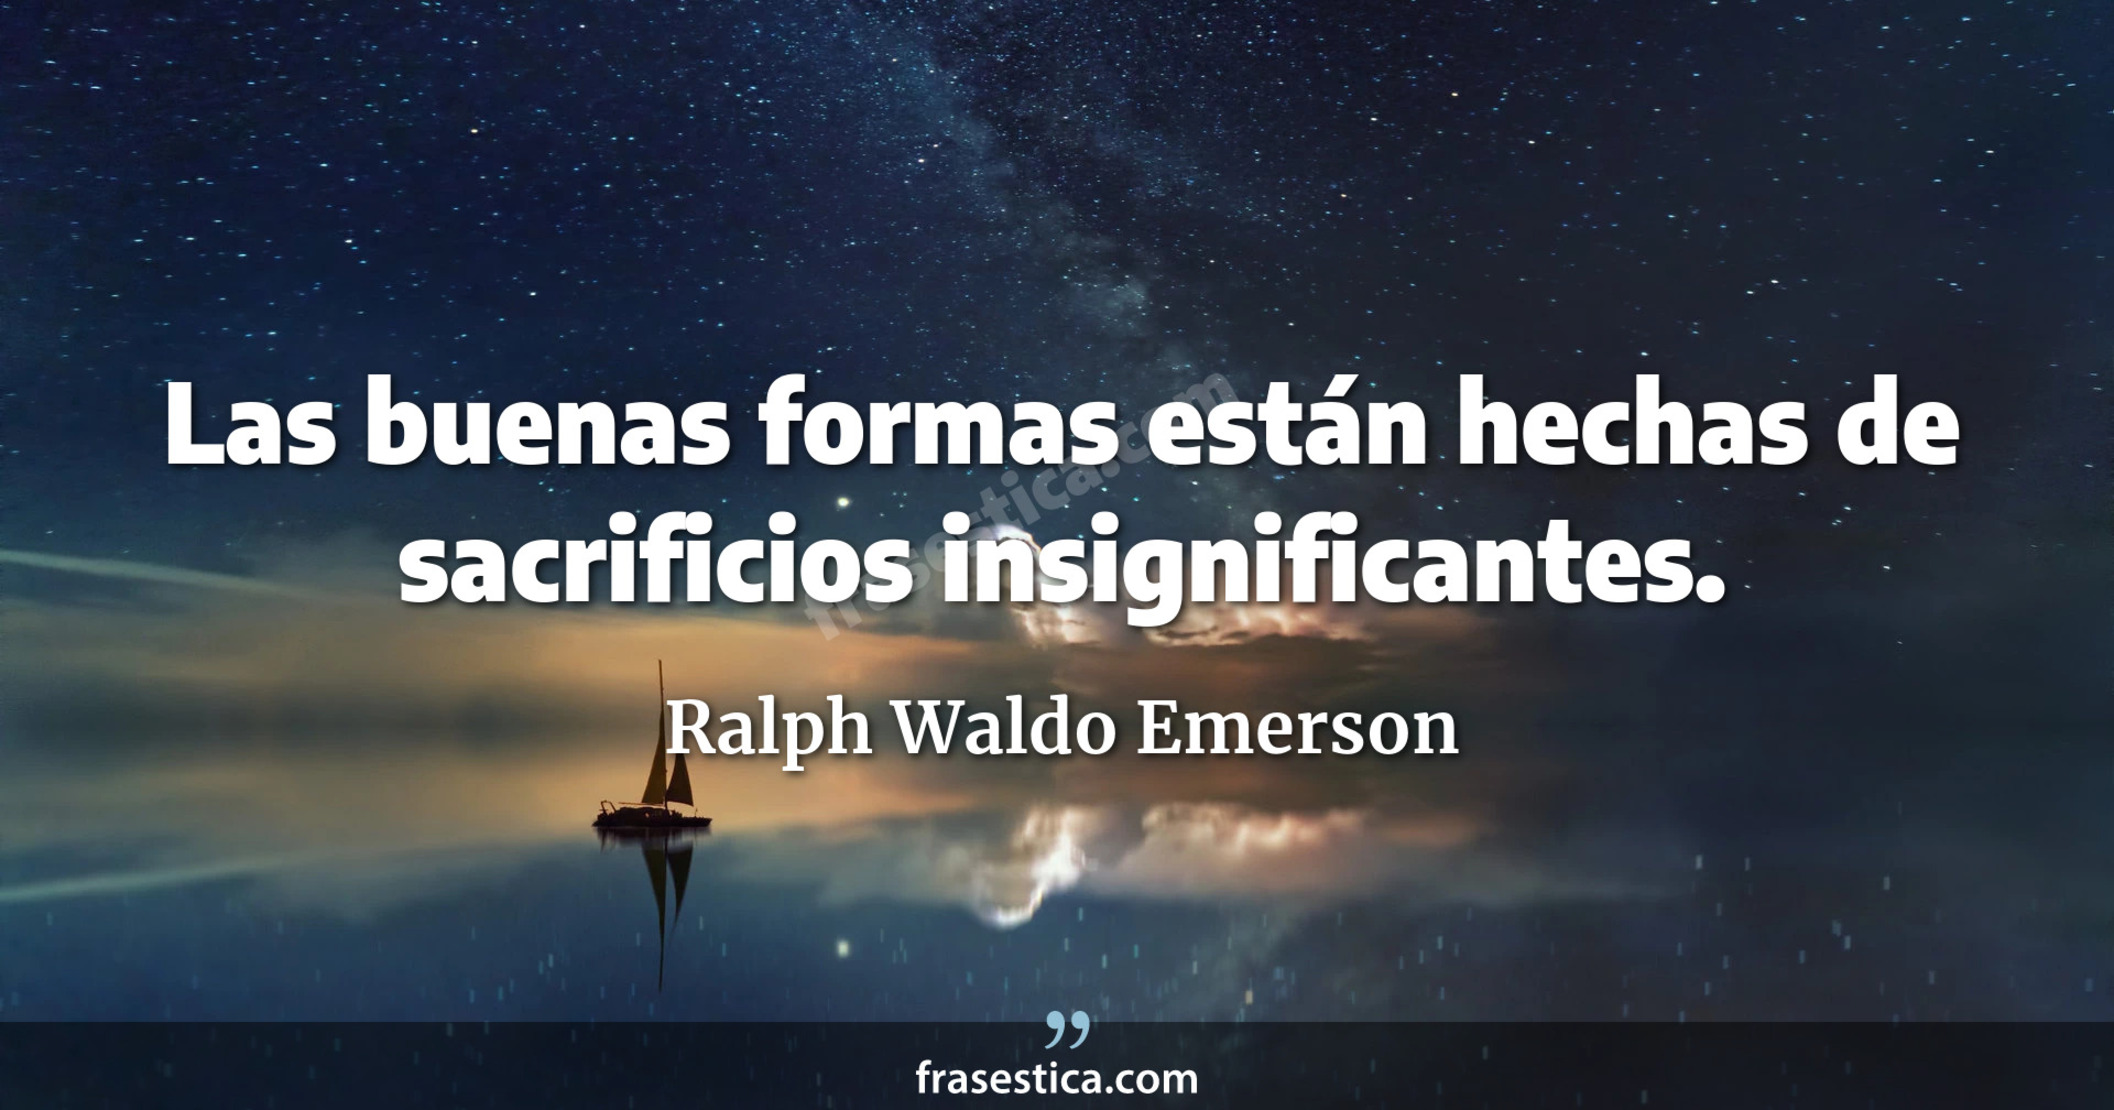 Las buenas formas están hechas de sacrificios insignificantes. - Ralph Waldo Emerson